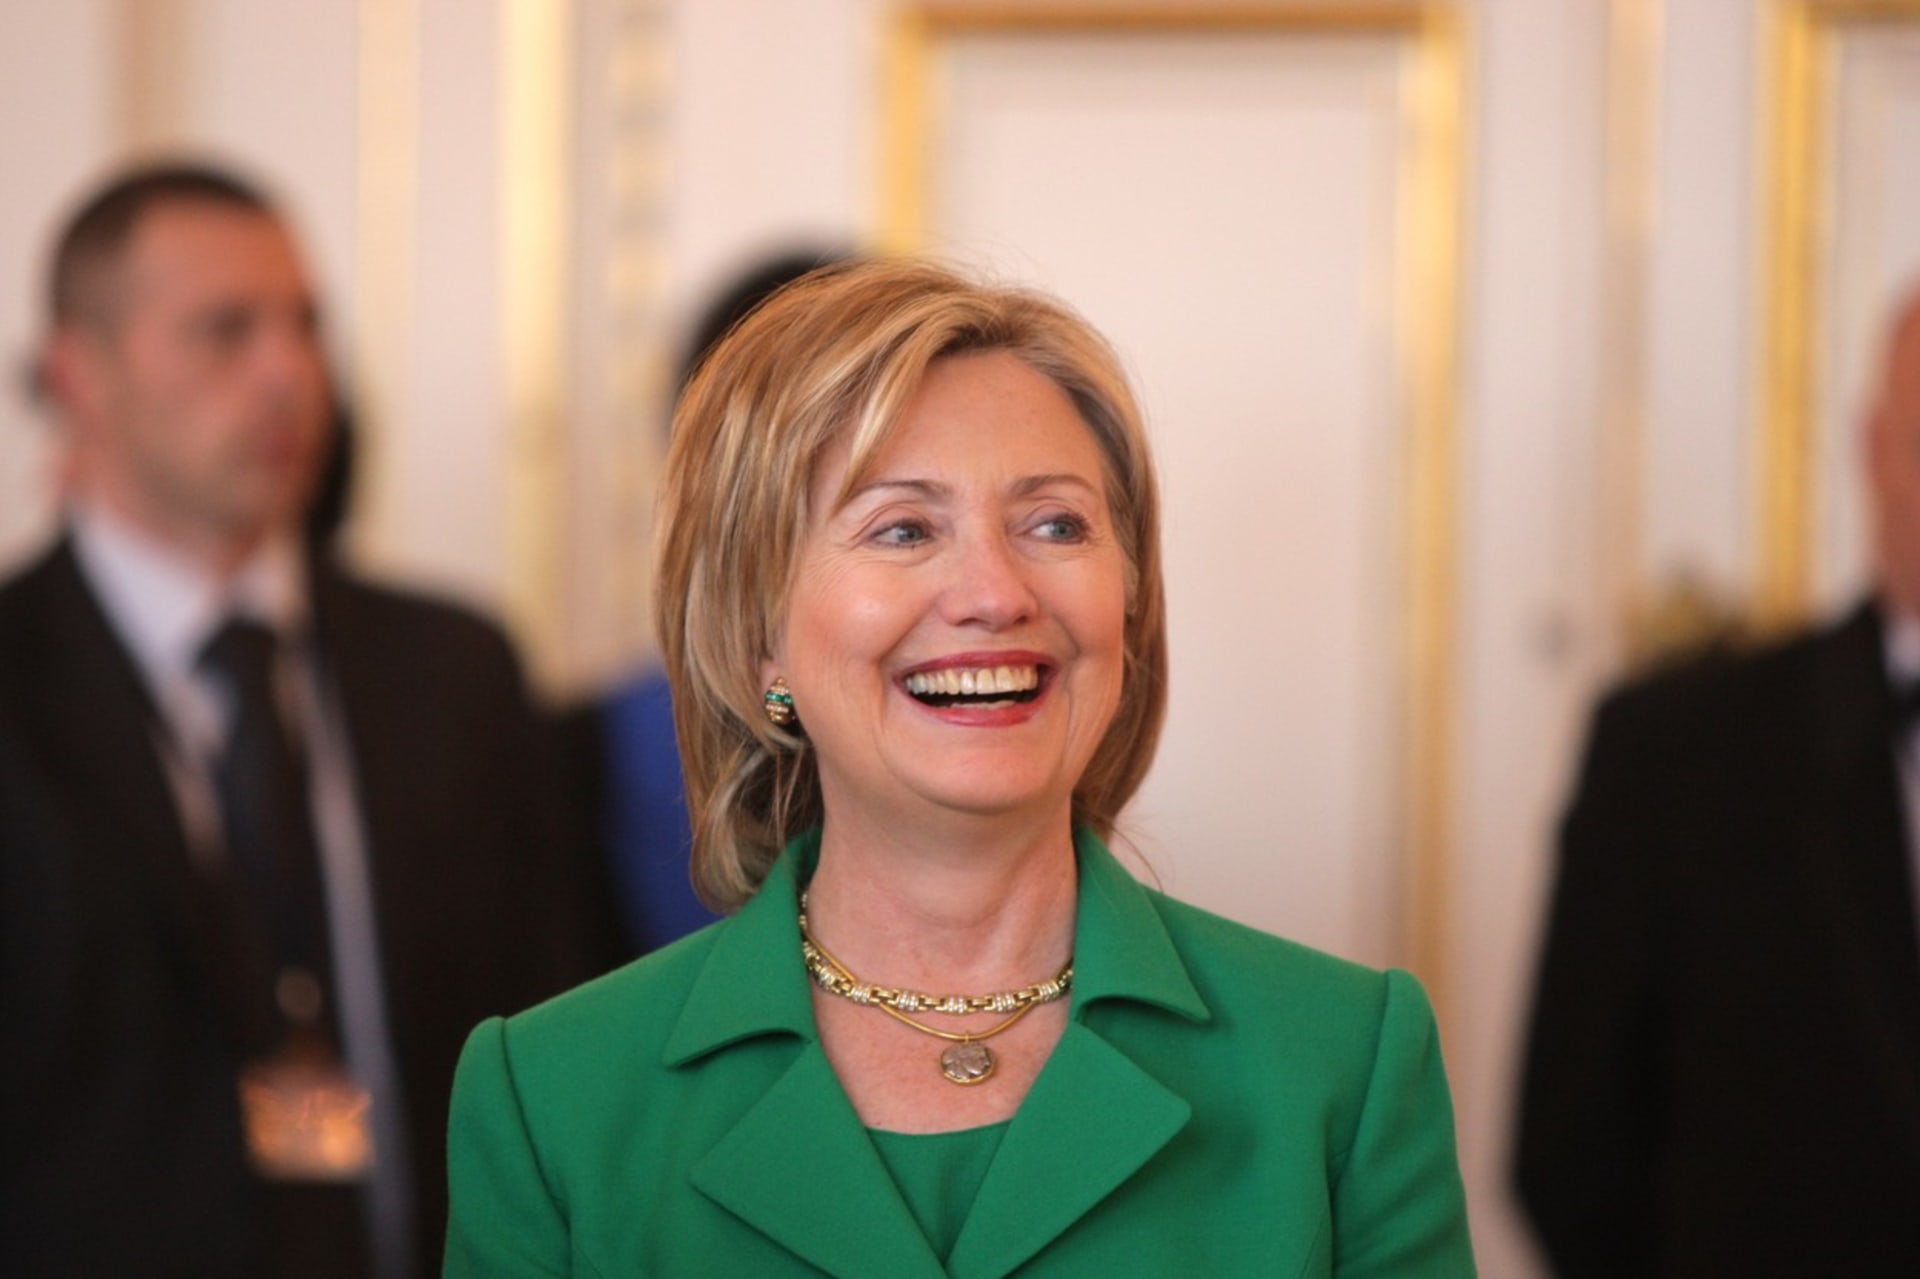 Hilary Clintonová je někdejší první dáma Spojených států a bývalá ministryně zahraničí.